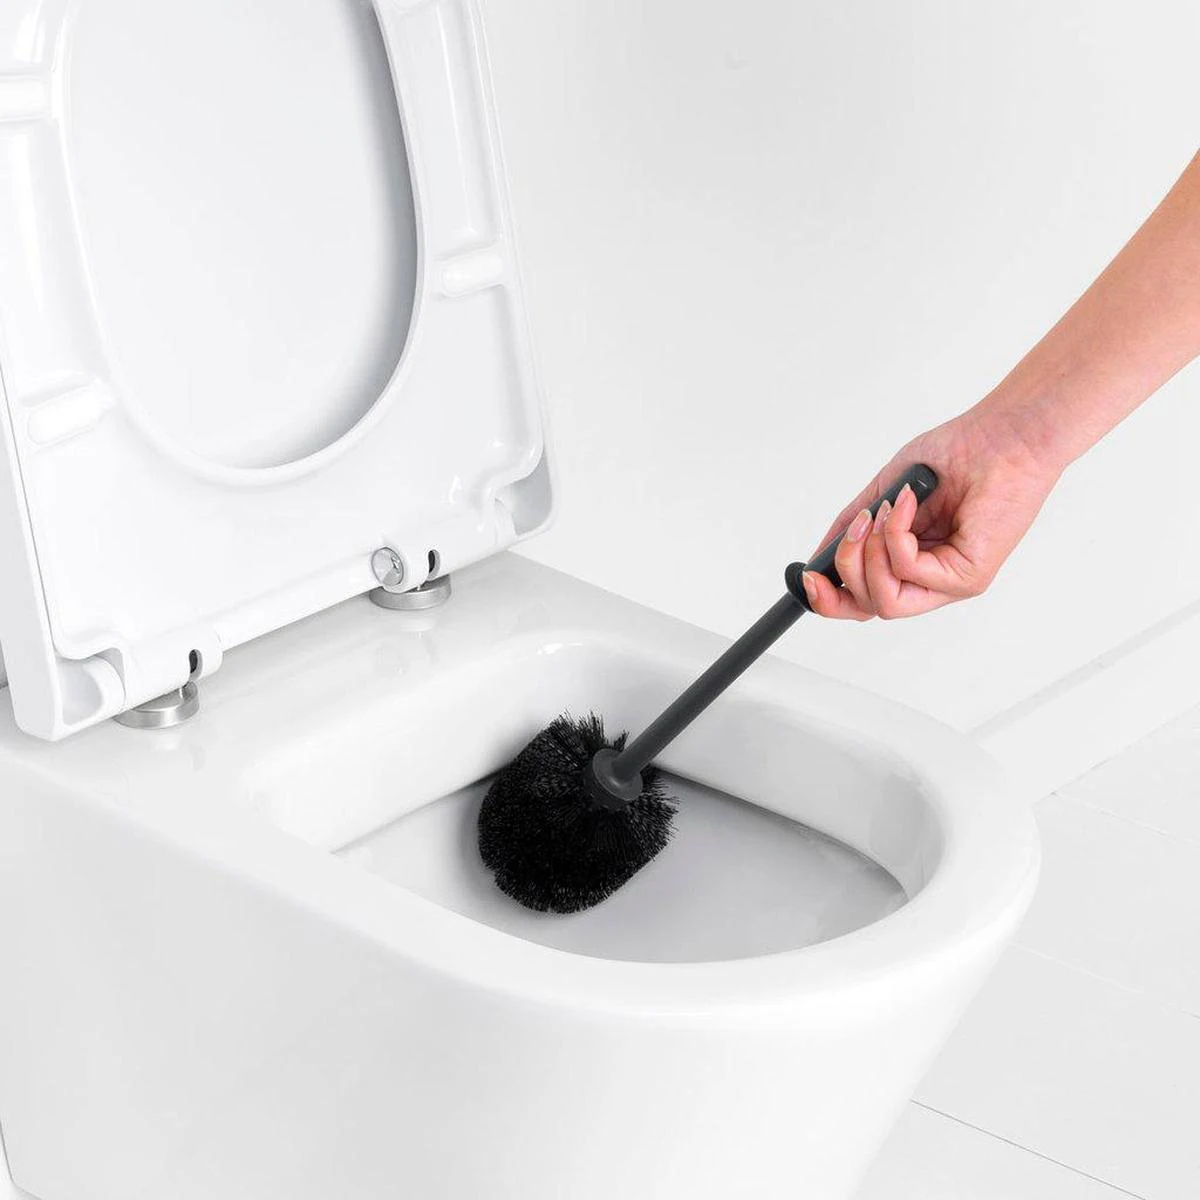 Cómo limpiar la escobilla del váter y desinfectarla por completo